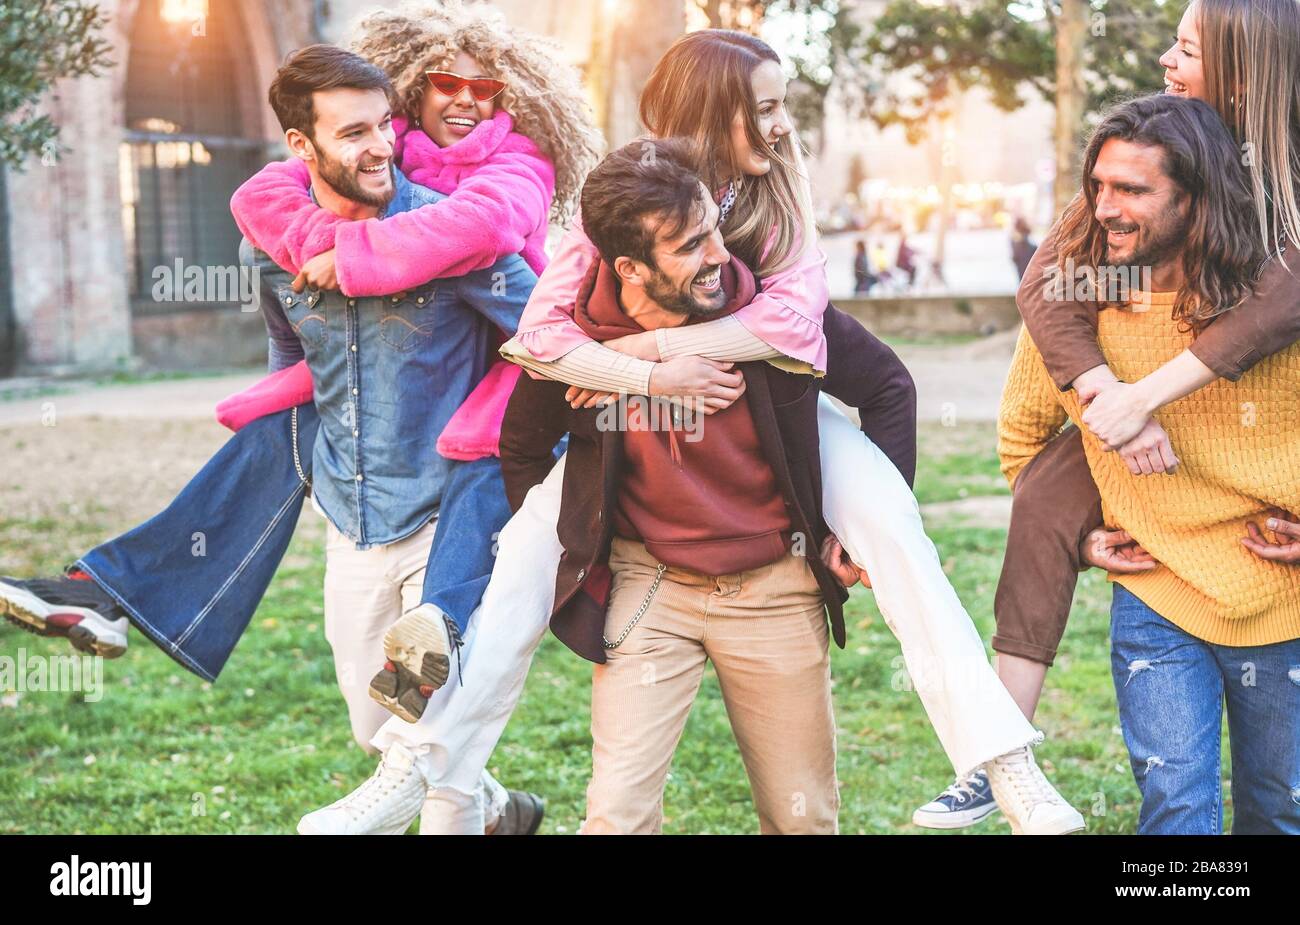 Junge Studenten Freunde haben Spaß im Freien - glückliche Menschen nach dem gemeinsamen Lachen der Universität - Jugend-, Multiracial- und Freundschaftskonzept - Schwerpunkt o Stockfoto